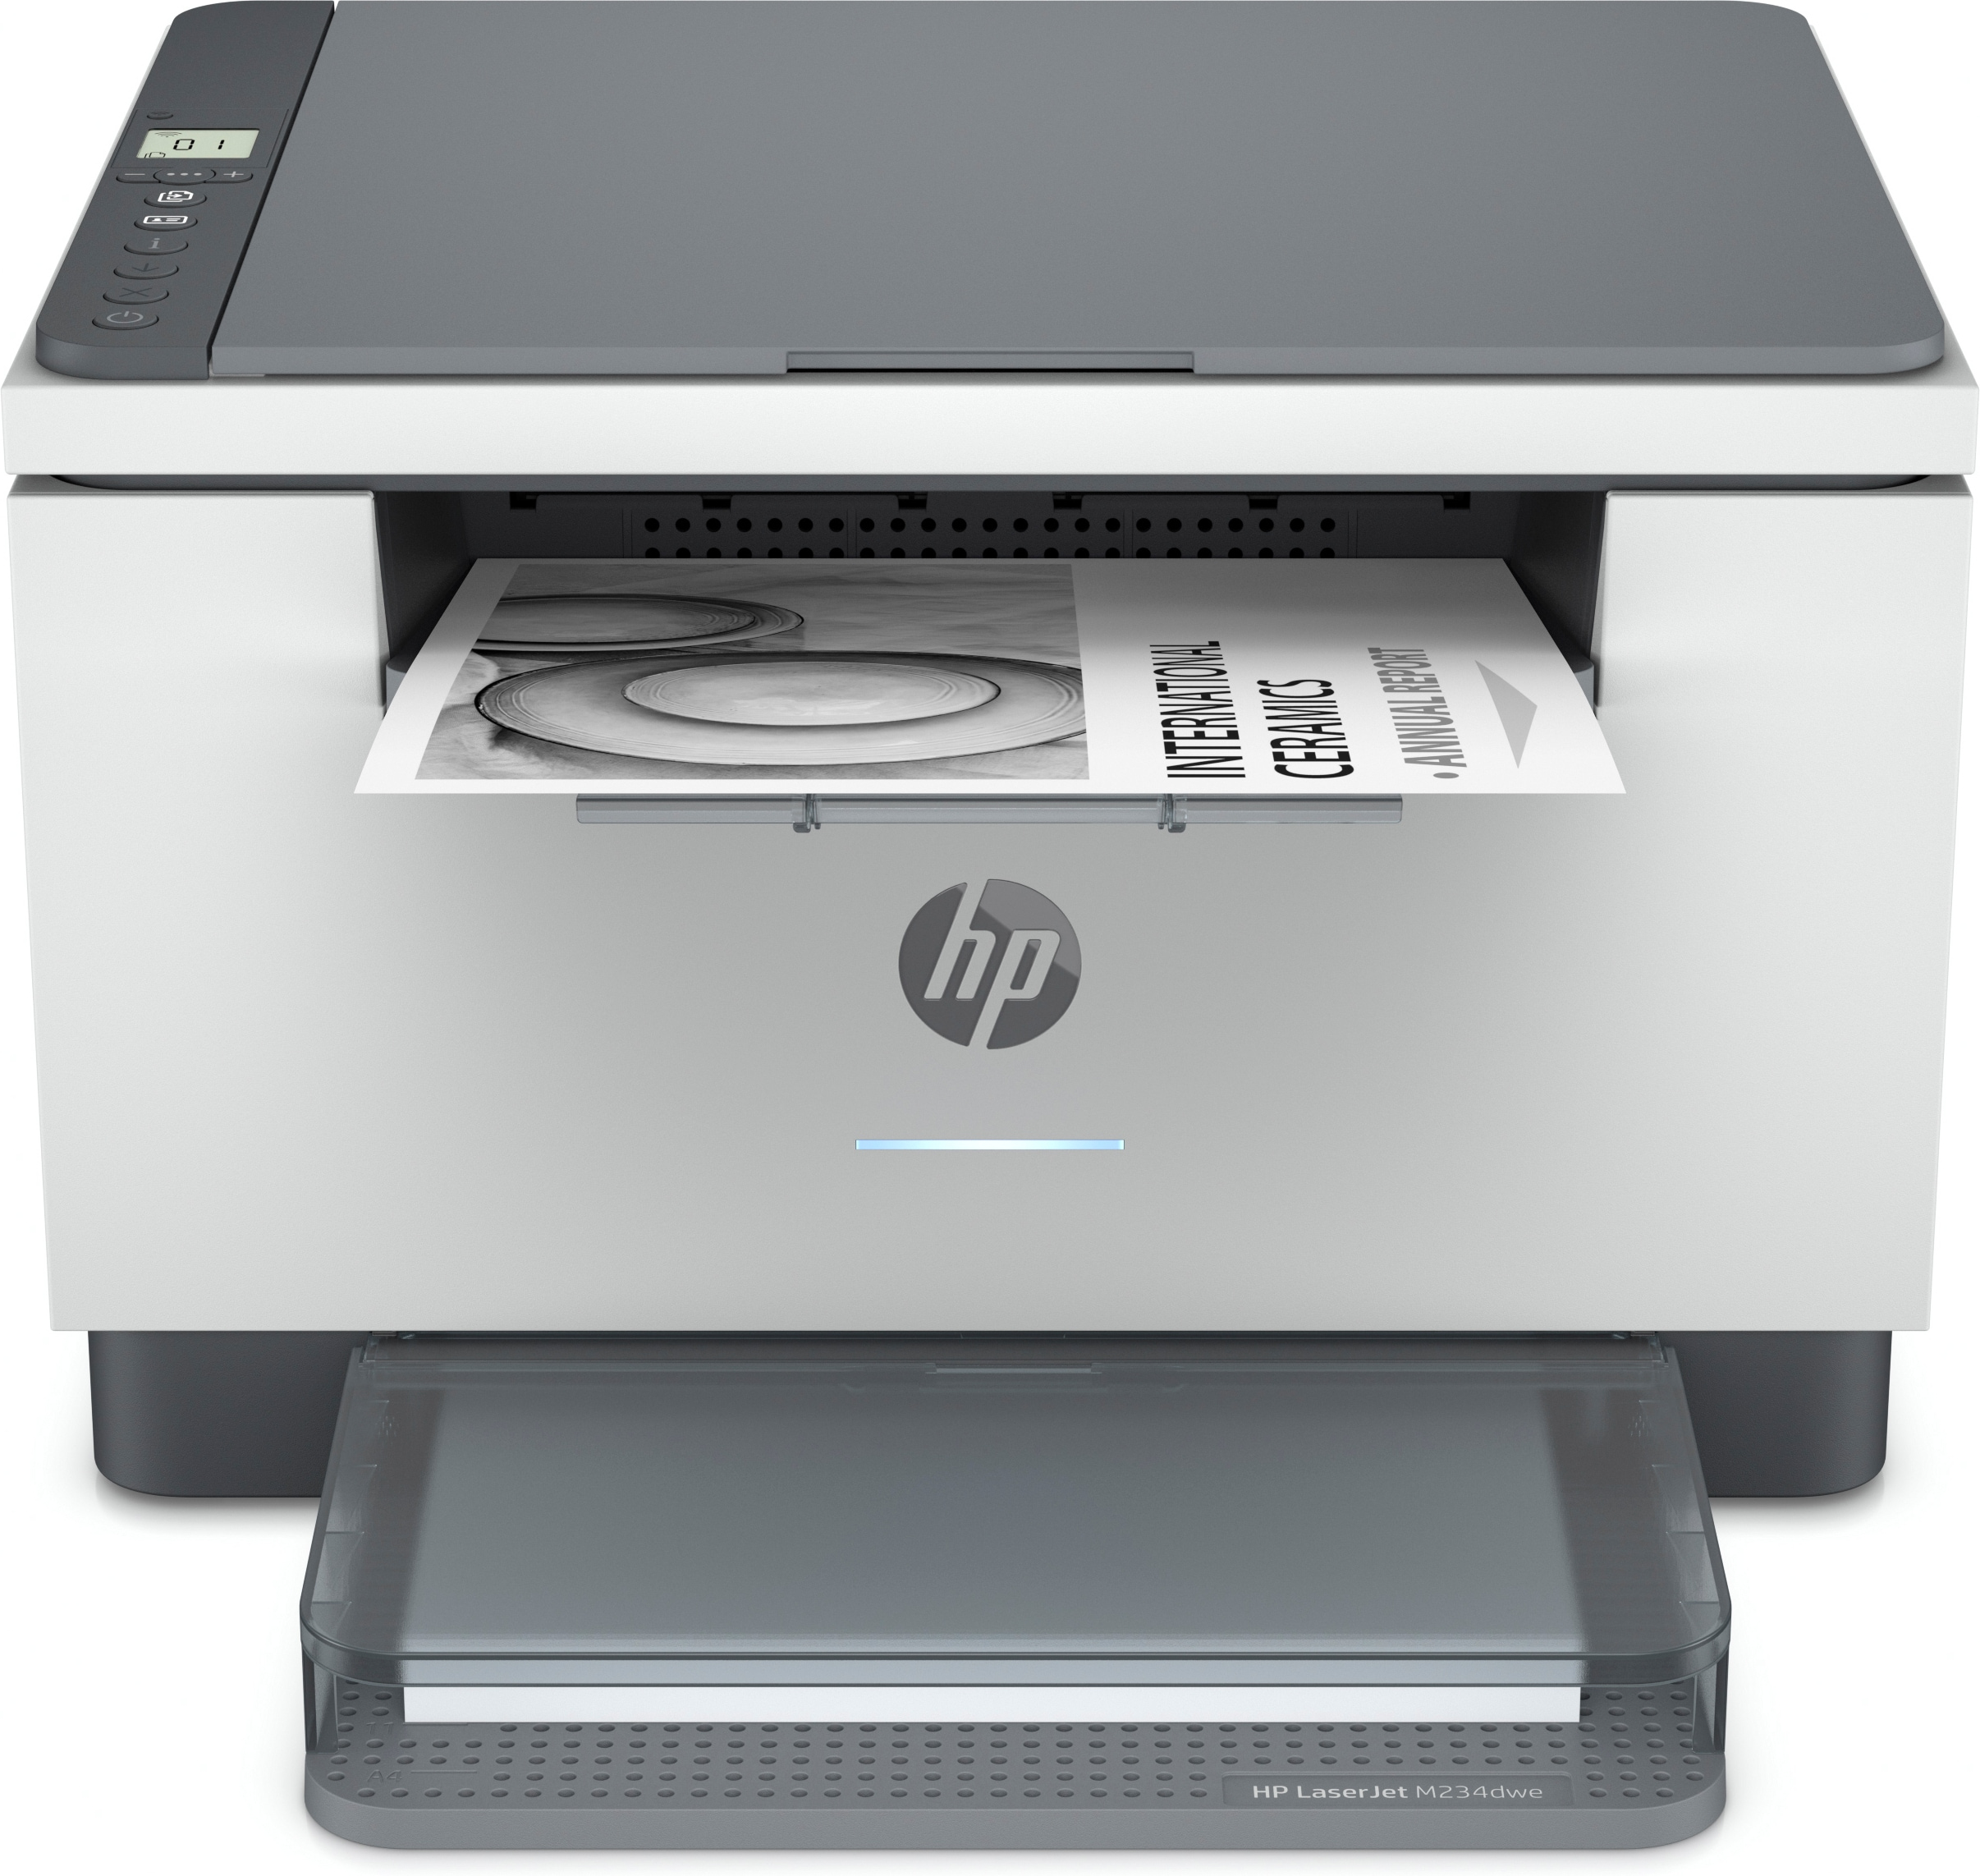 HP LaserJet M234dwe printer, Zwart-wit, Printer voor Thuis en thuiskantoor, Printen, kopieren, scannen, Scannen naar e-mail: Scannen naar pdf